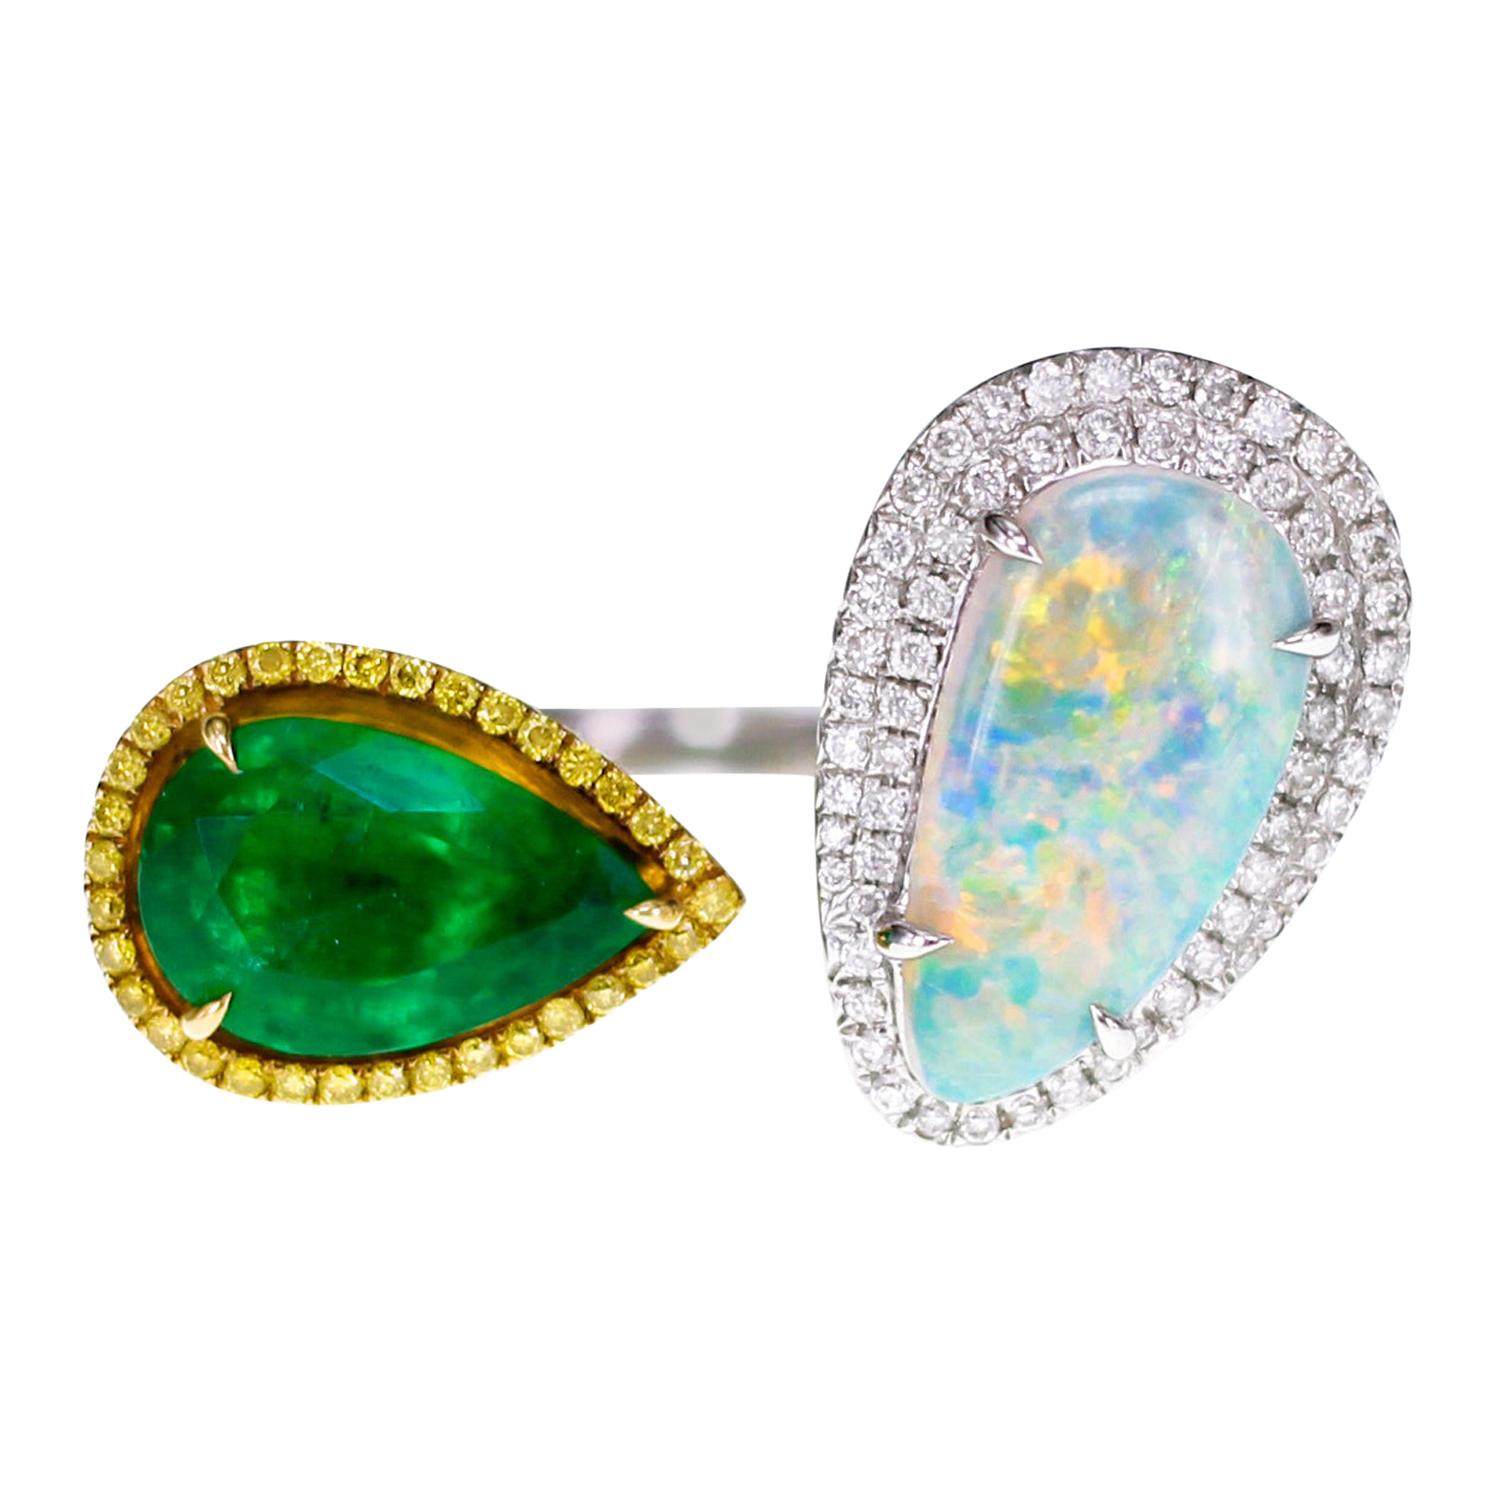 Zambian Emerald and Ethiopian Opal Twin Ring